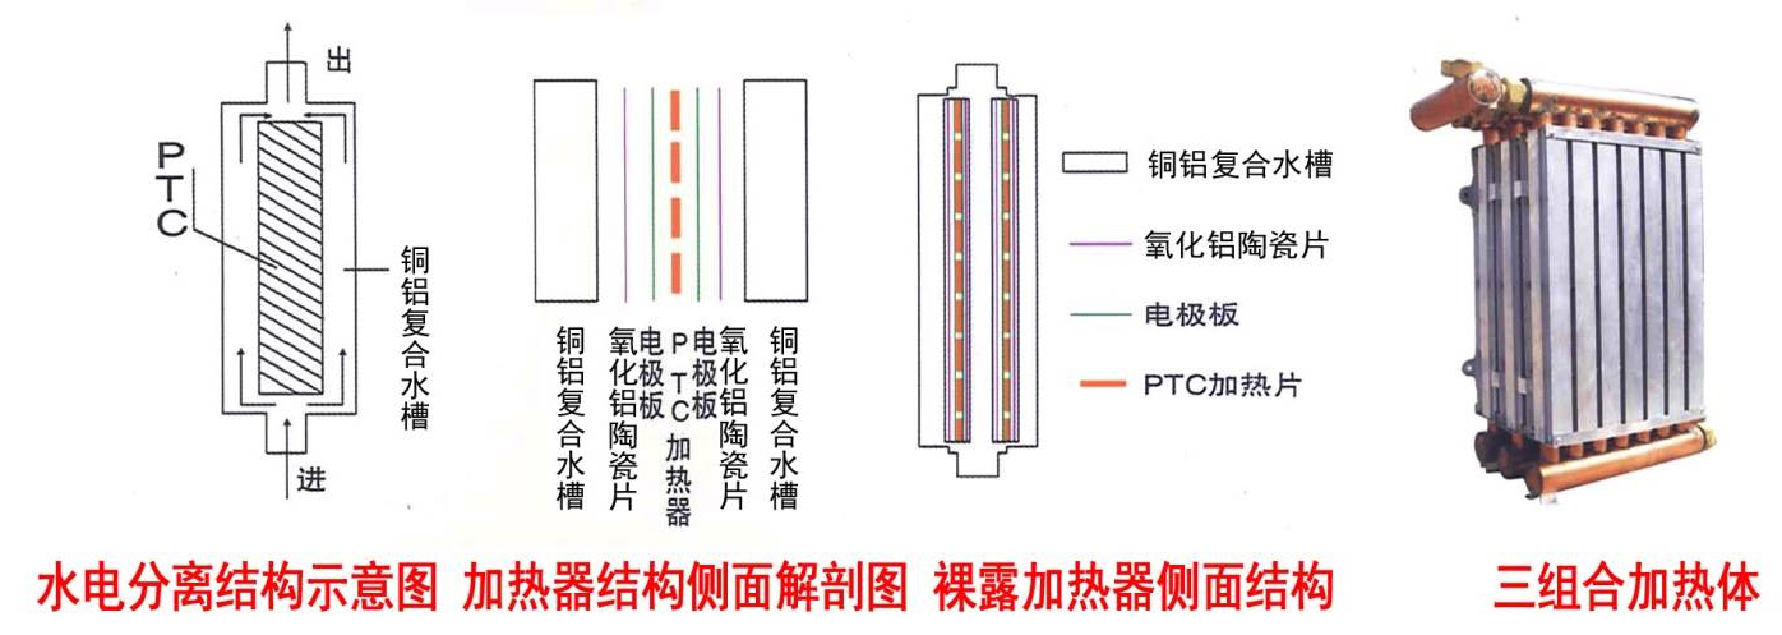 所有商品 "ptc"液体管道加热器  性能参数 1,工作电压:220v~380v 2